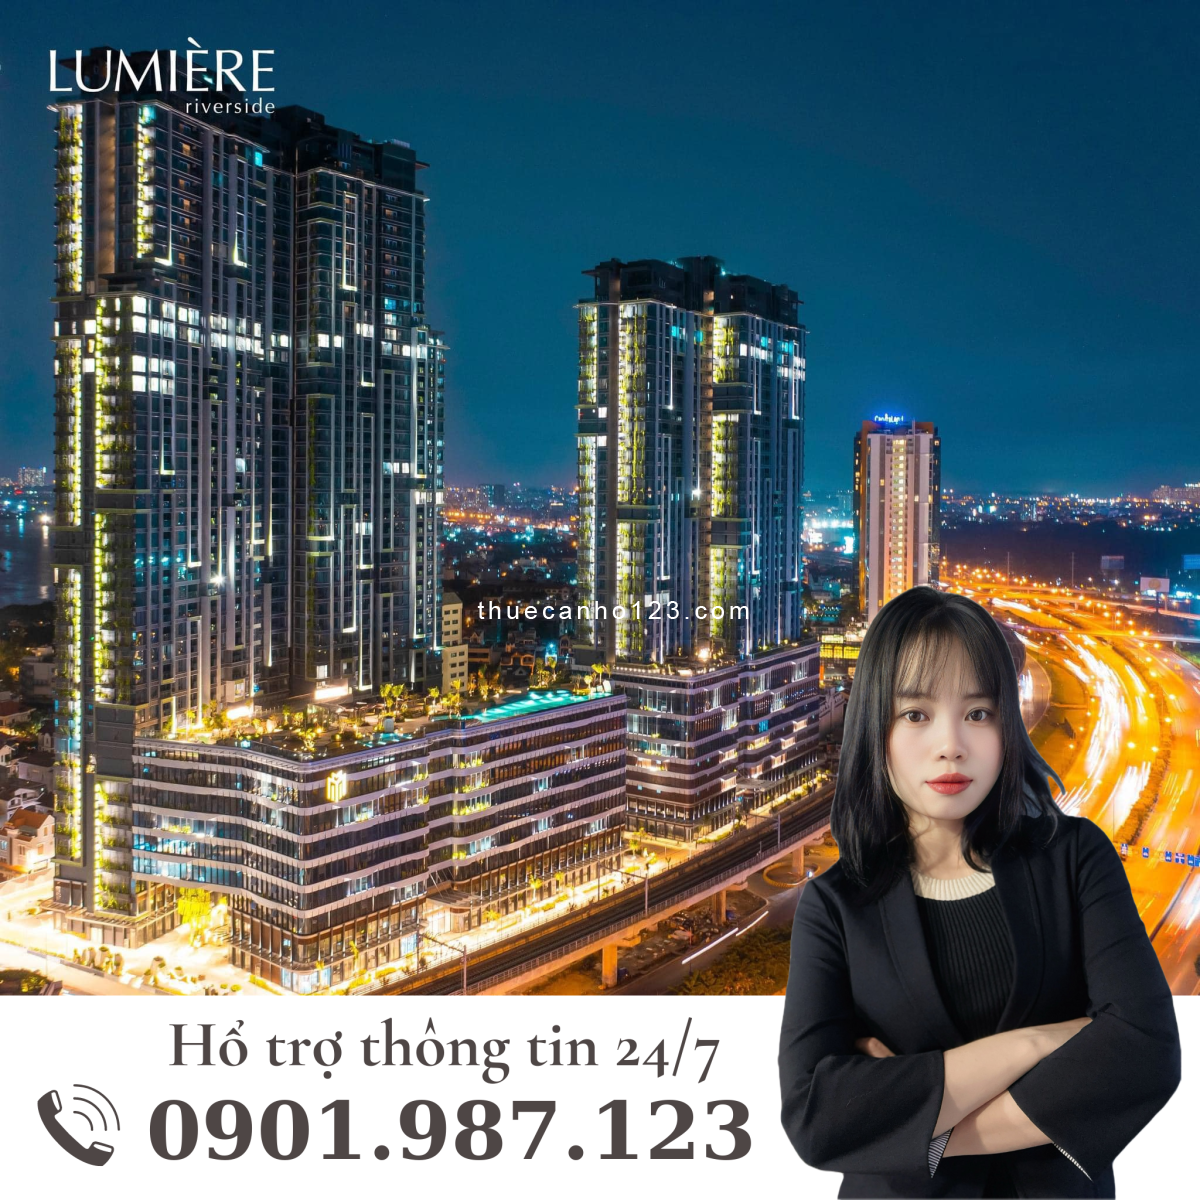 Cho thuê căn hộ chung cư giá tốt nhất Lumiere RVS Thảo Điền Quận 2